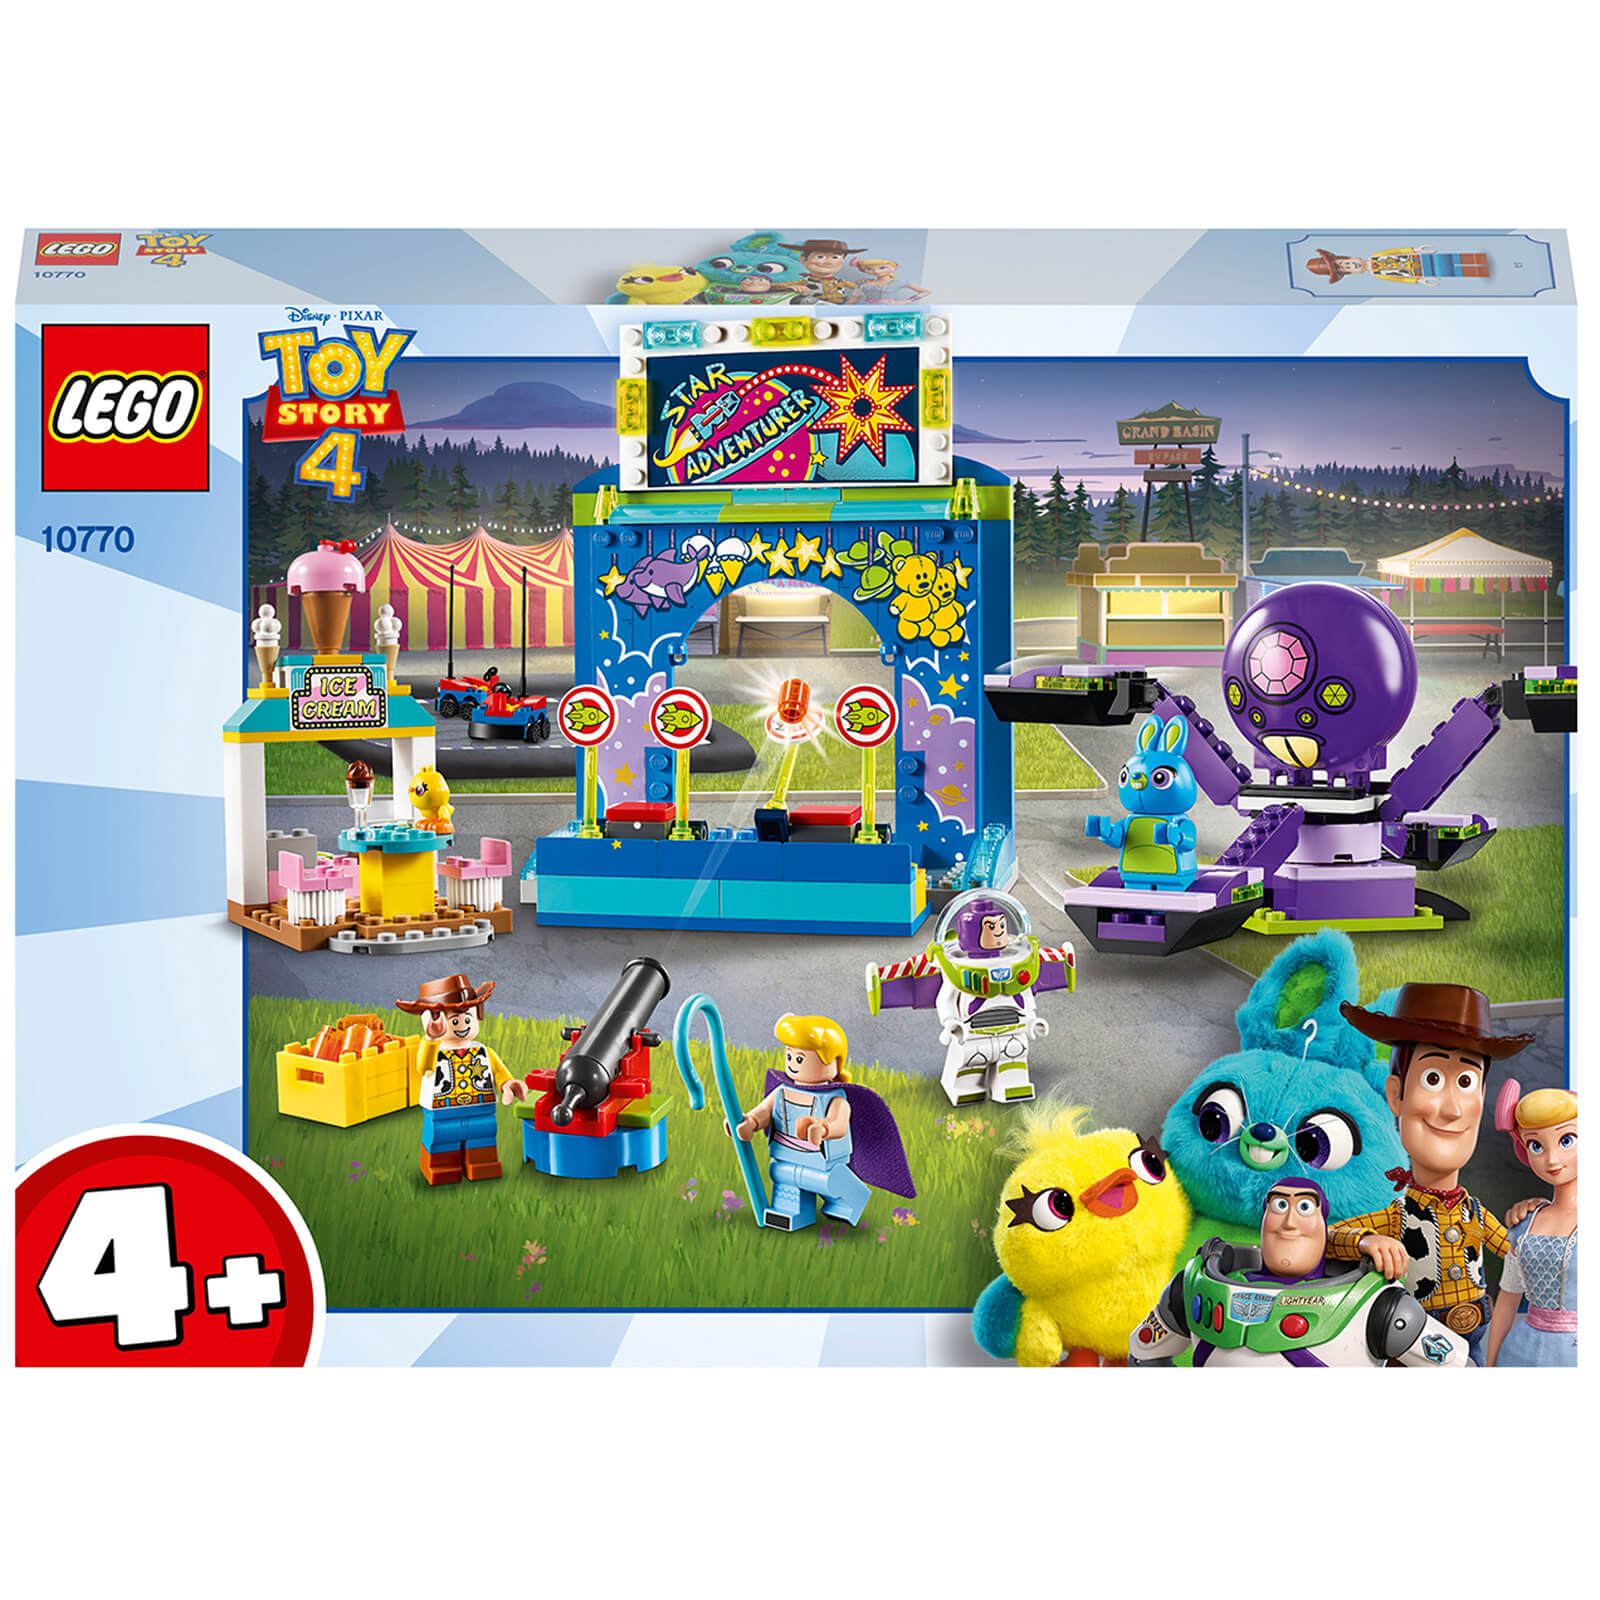 LEGO Toy Story 4: Buzz & Woodys Carnival Mania! (10770)